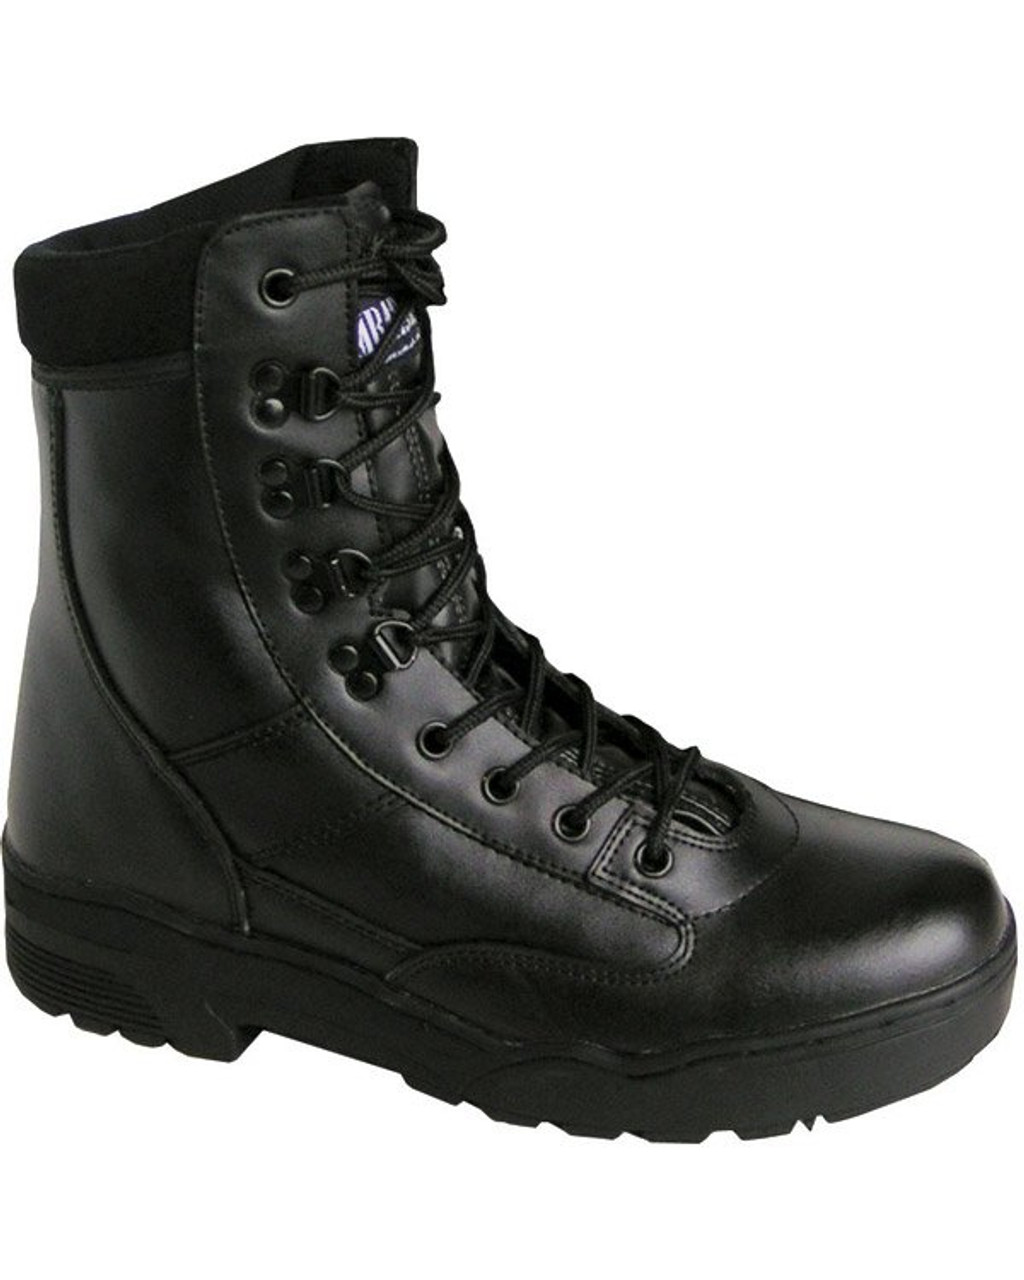 black colour boot